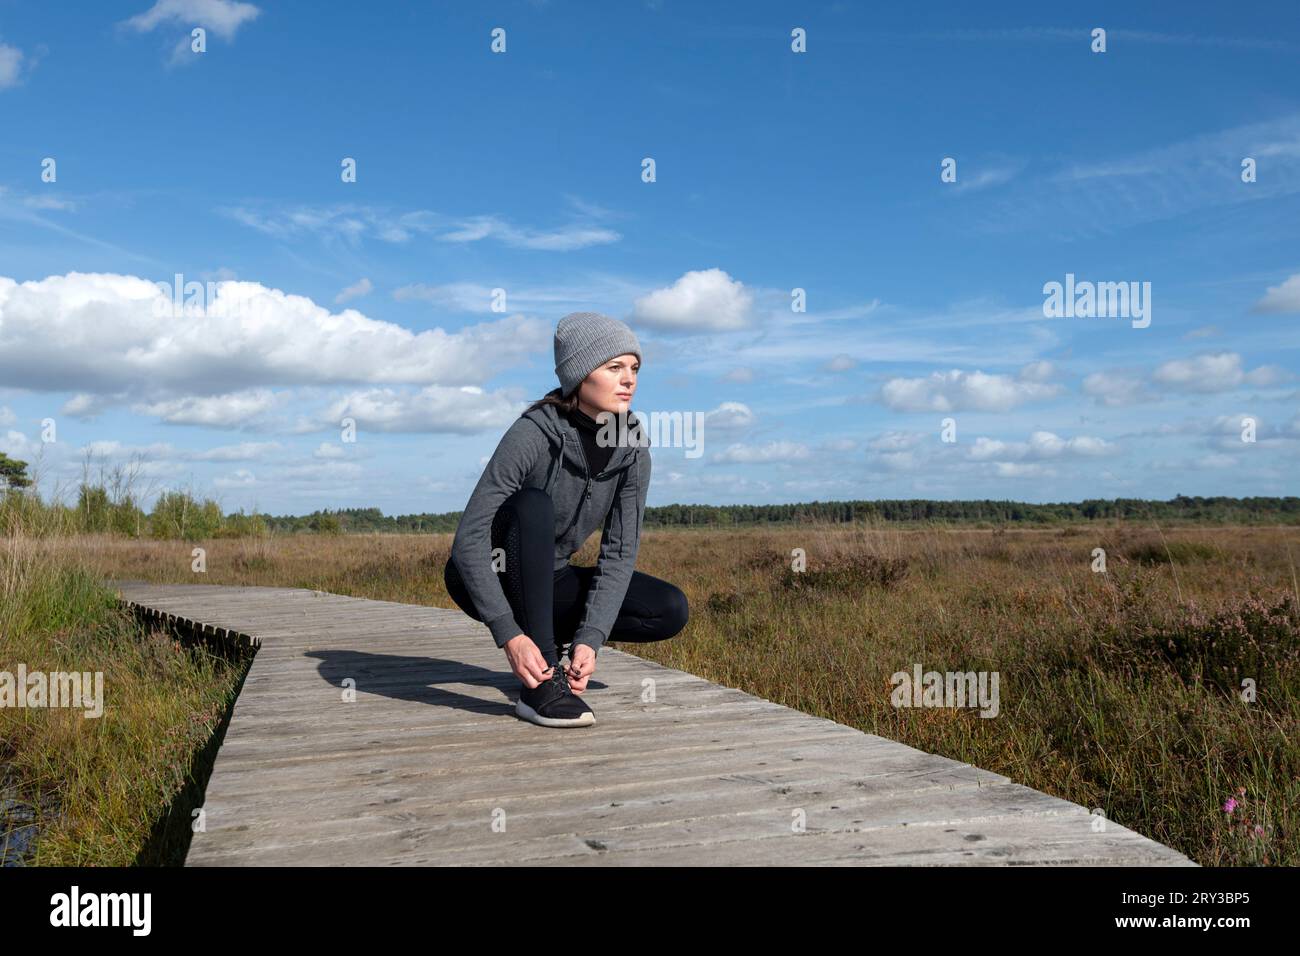 Fitness woman runner tying shoelace on wetland boardwalk Stock Photo